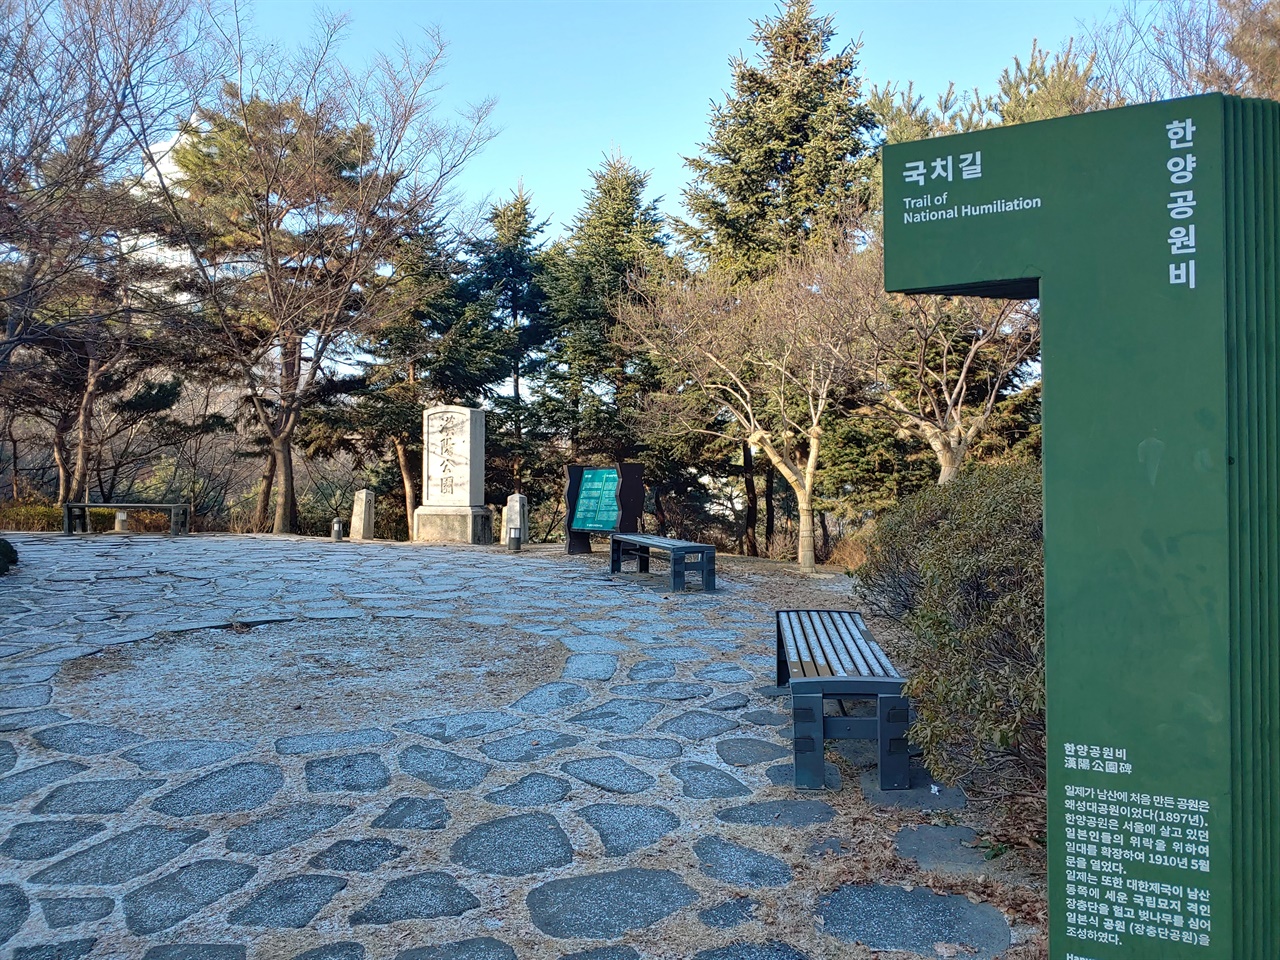 친일파가 일본에 바친 광대한 토지에 일본인 위락시설 조성을 위해 만든 공원. 한양공원 친필현판을 고종이 내리고, 그 글을 가져다 1912년 석비를 세움. 지금의 남산 케이블카 승강장 위에 위치.